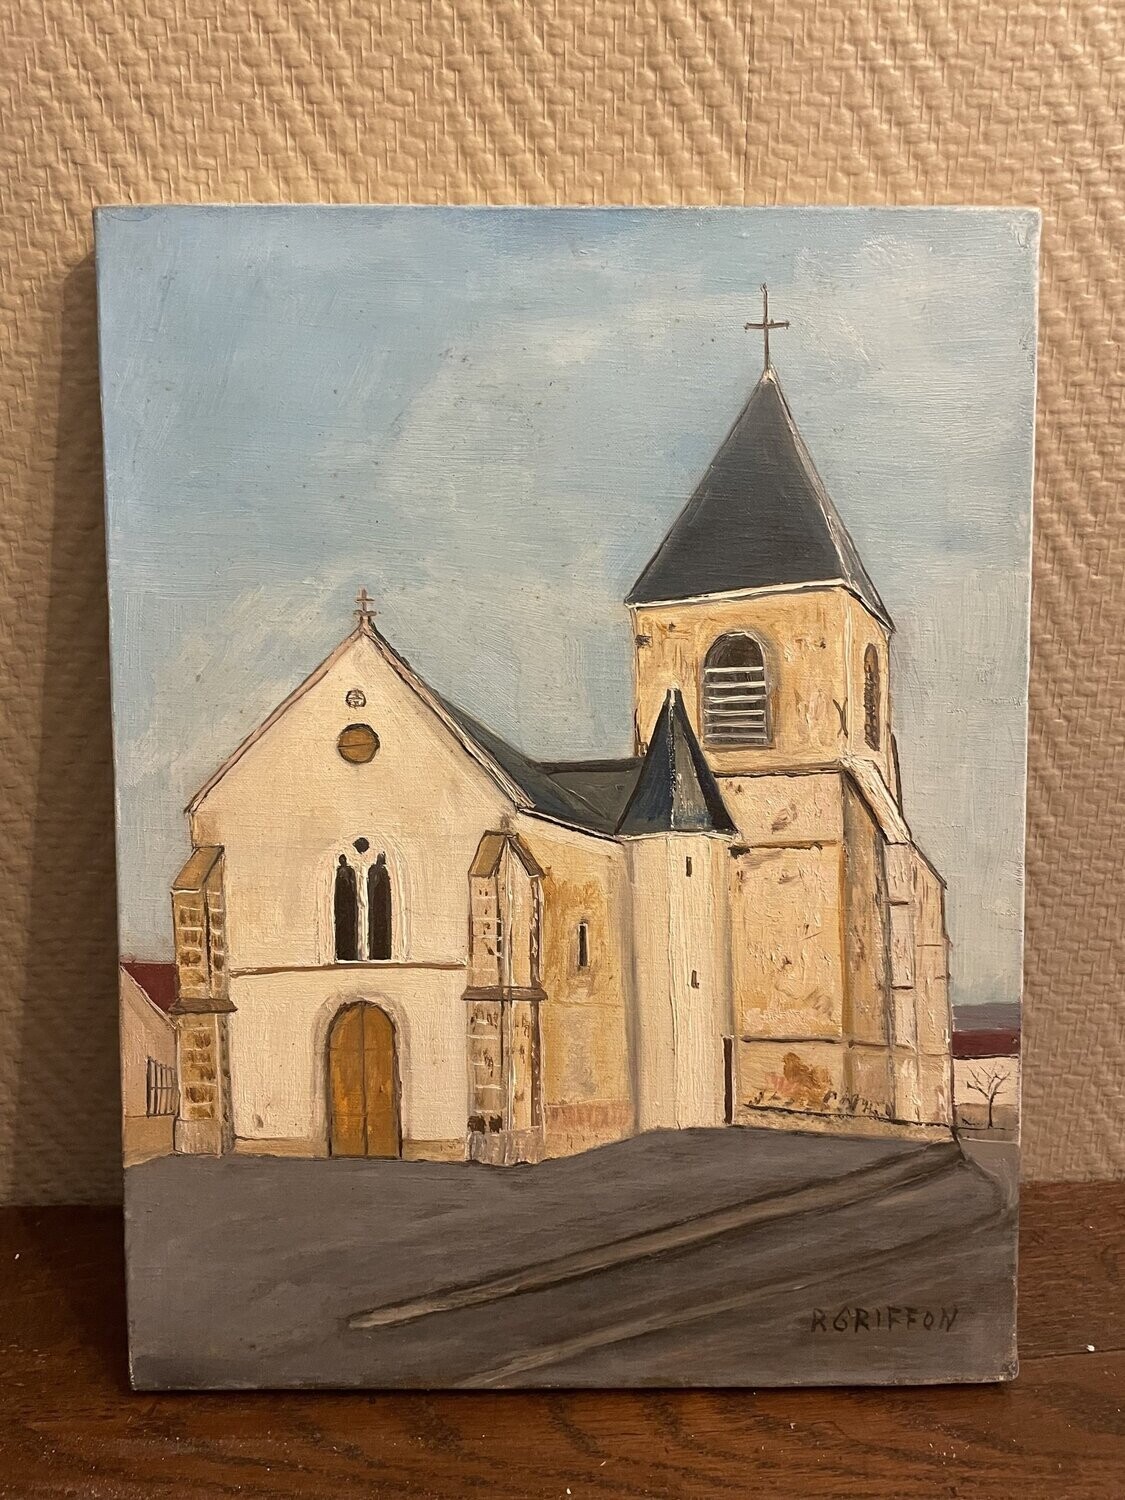 R. Griffon, peintre de Bourges. "L'église de Germaine" - 35 cm x 27 cm